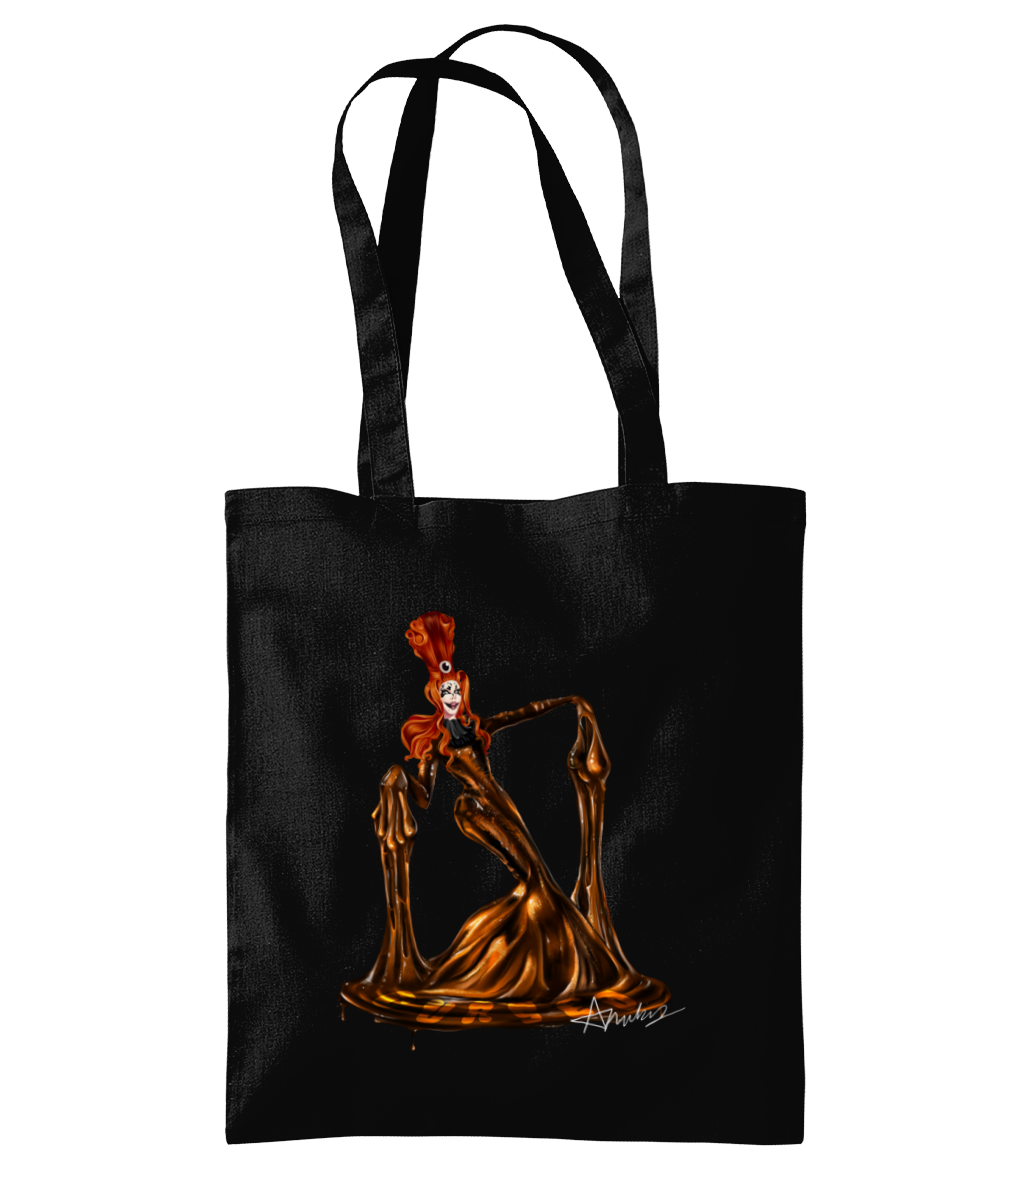 Anubis - Cursed Tote Bag